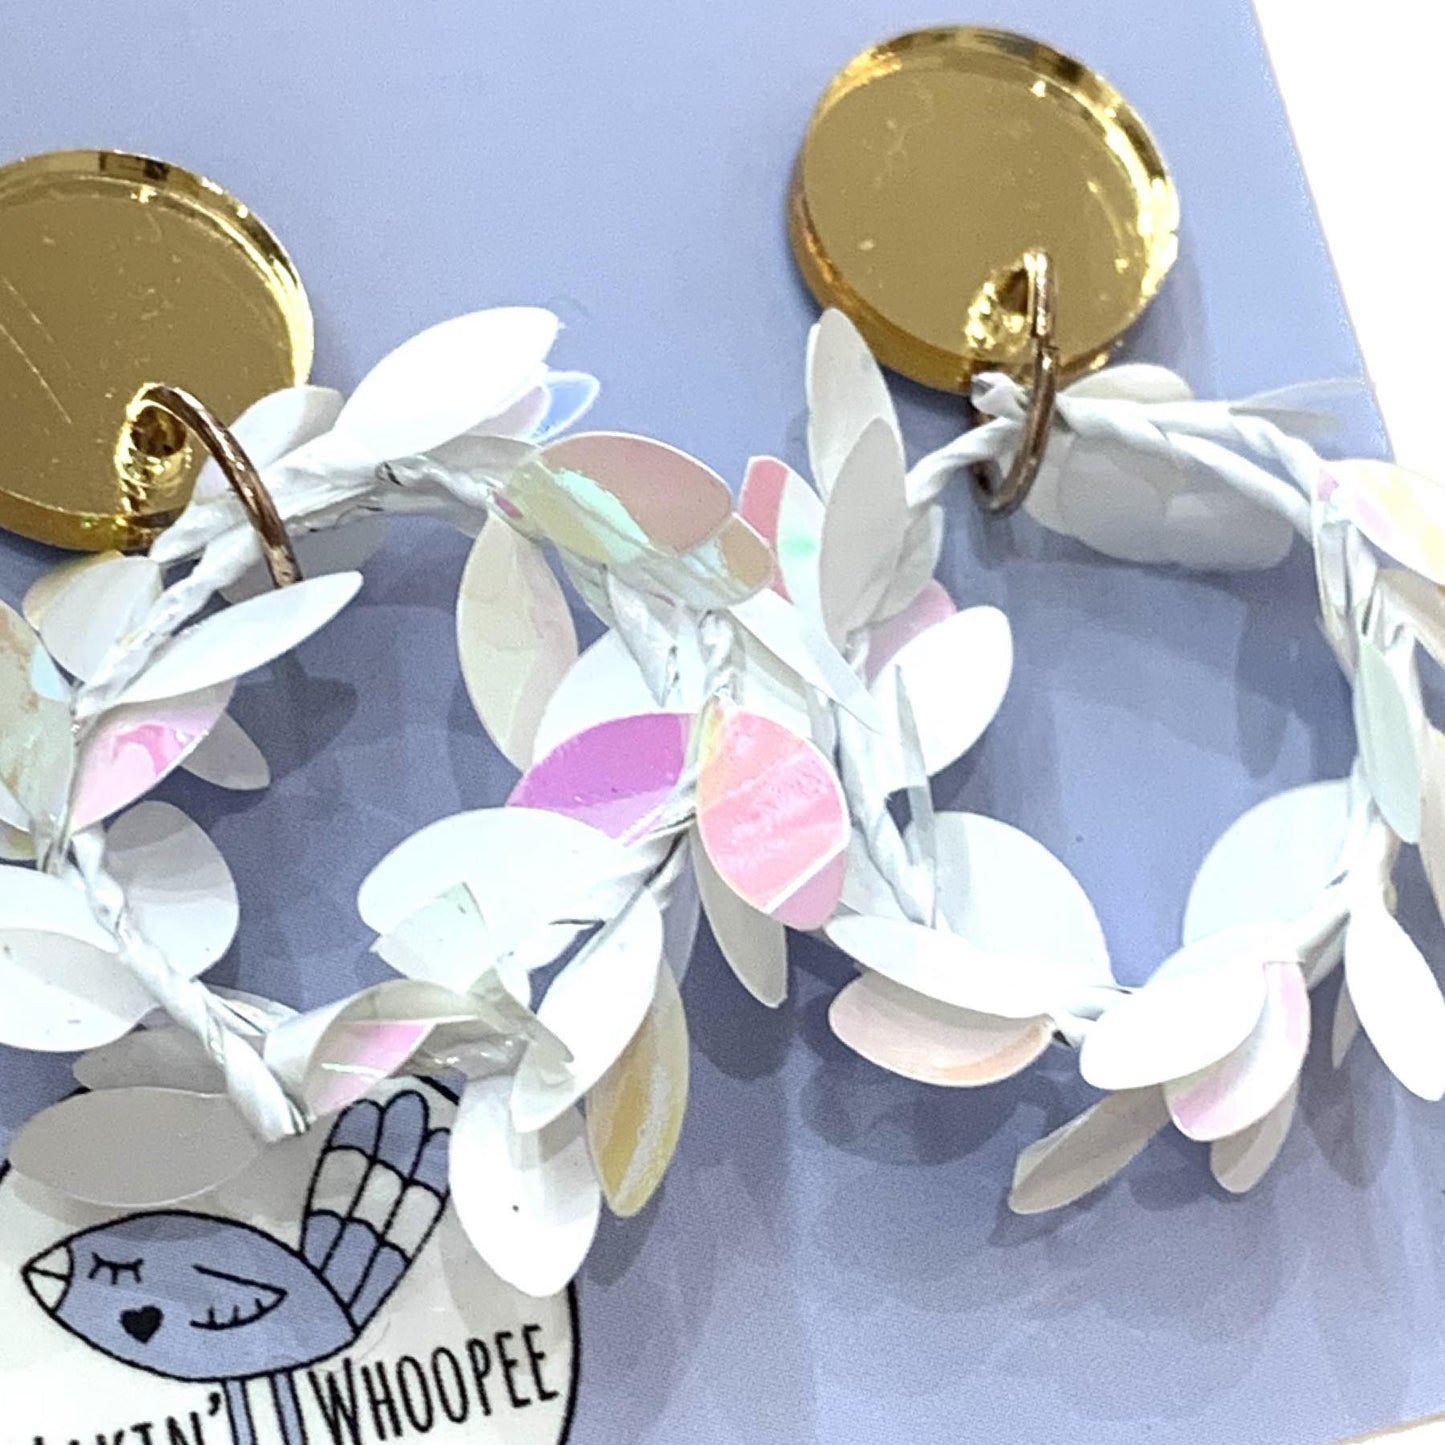 MAKIN' WHOOPEE - Frosty Wreath Earrings- Gold Mirror Stud Top